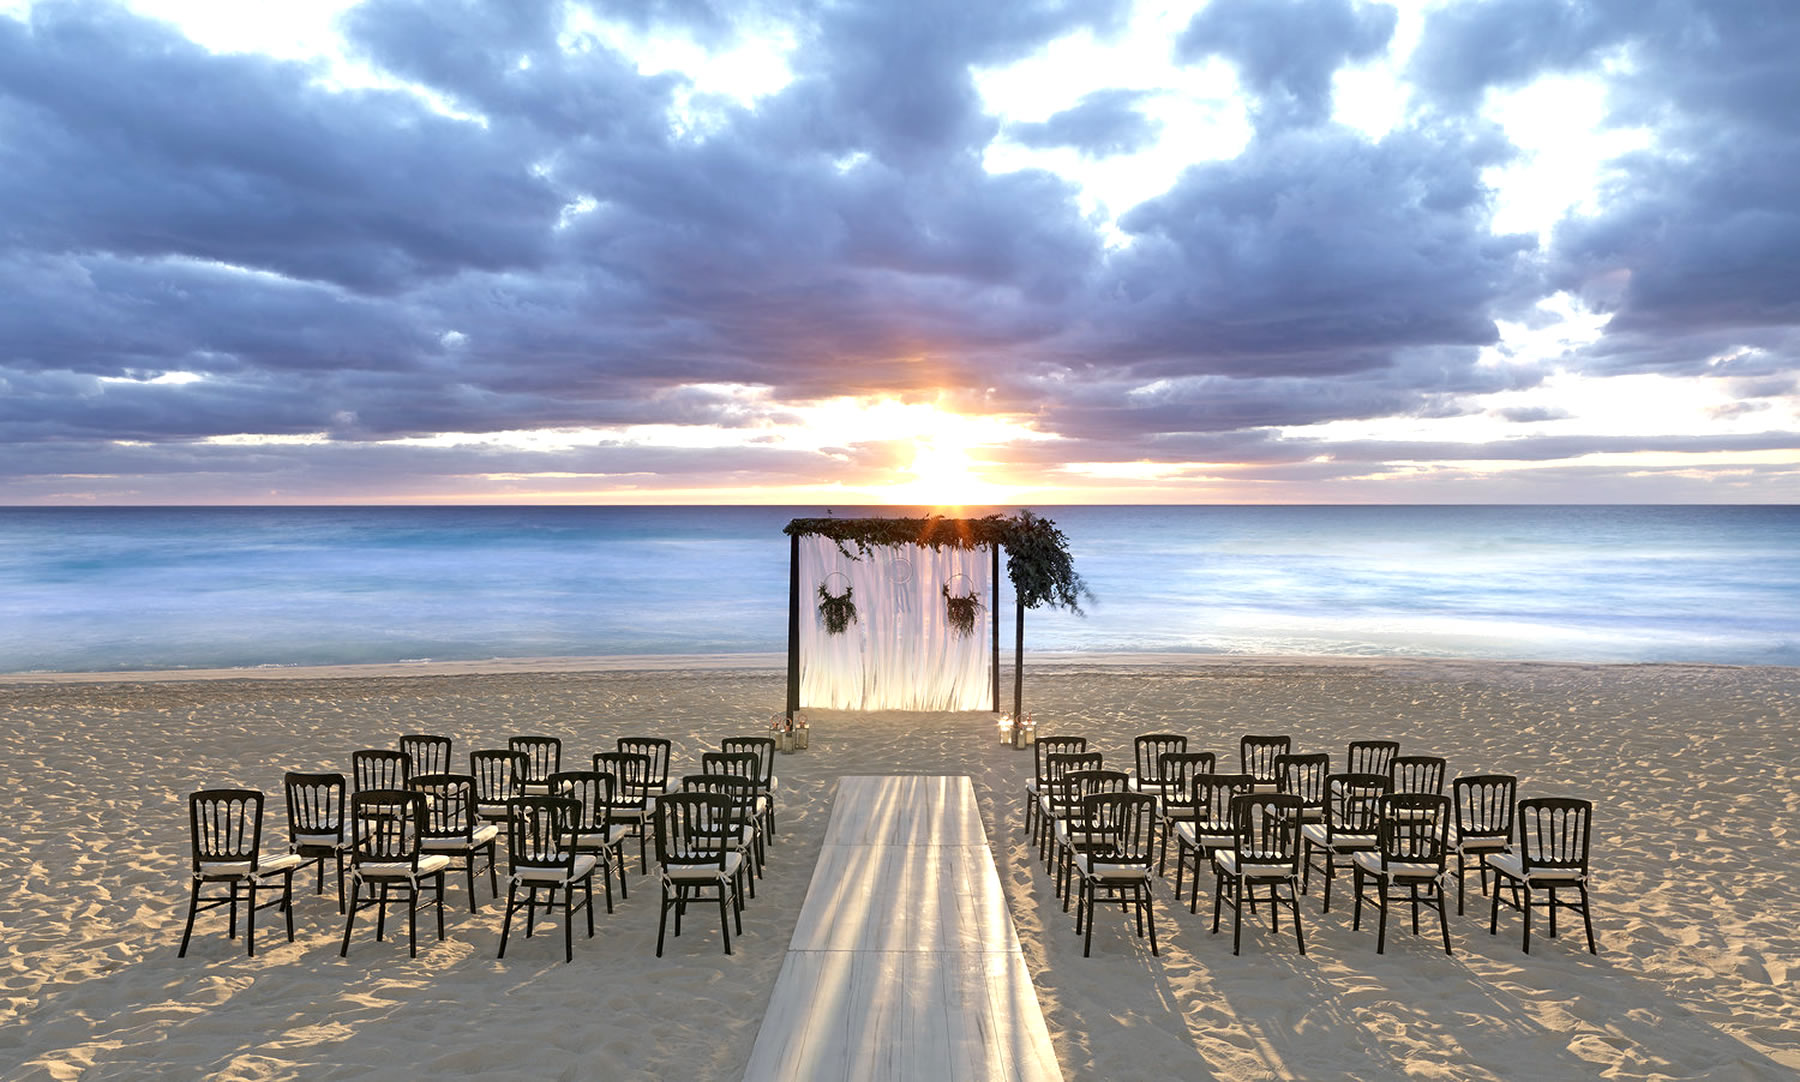 En UNICO 20º87º Hotel Riviera Maya, tu boda será exquisita y elegante